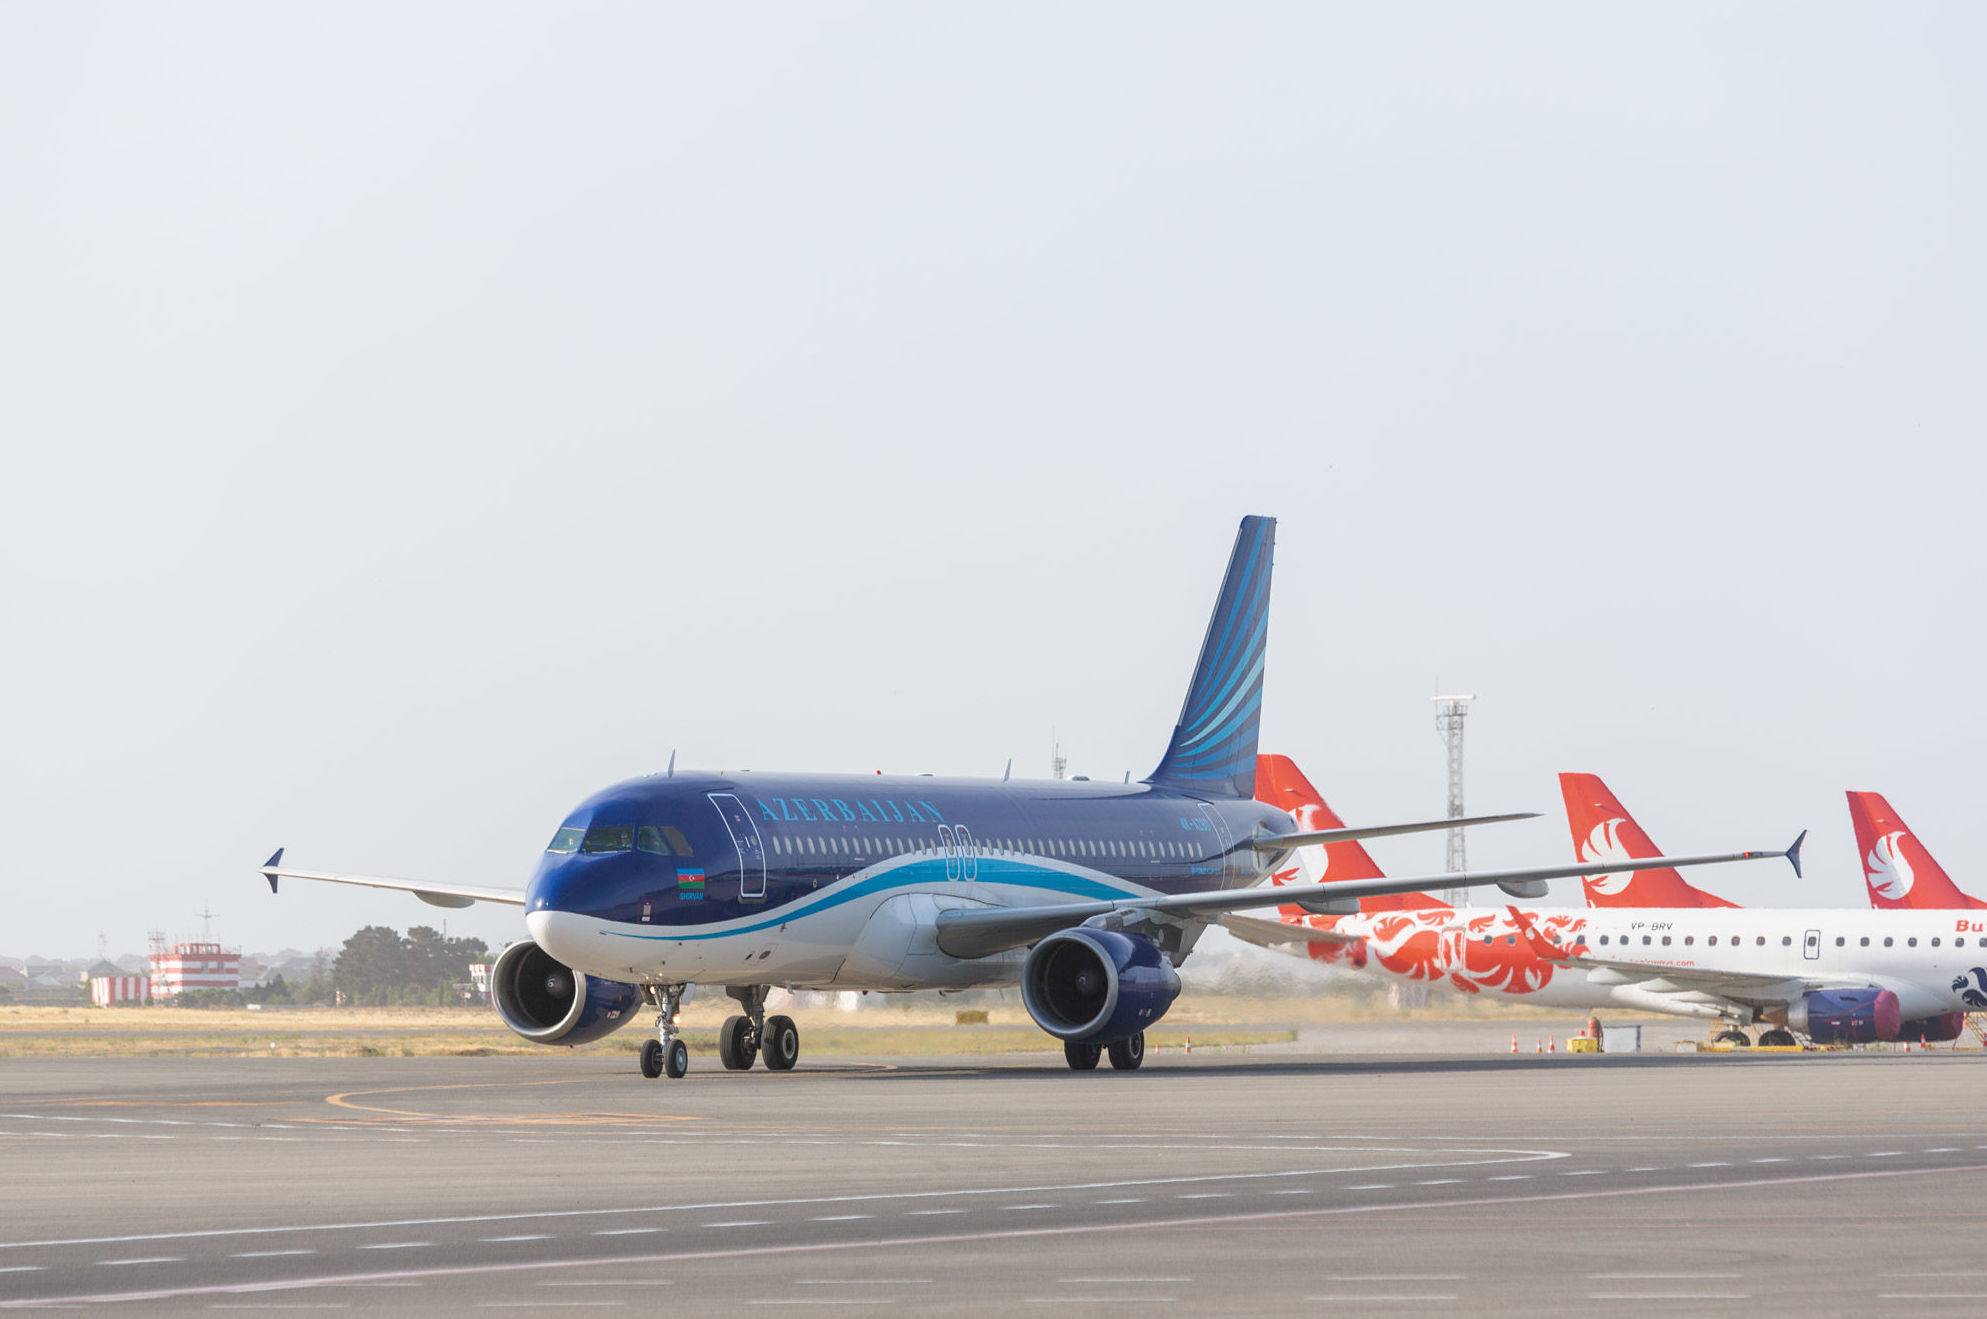 Азербайджанские авиалинии – официальный сайт